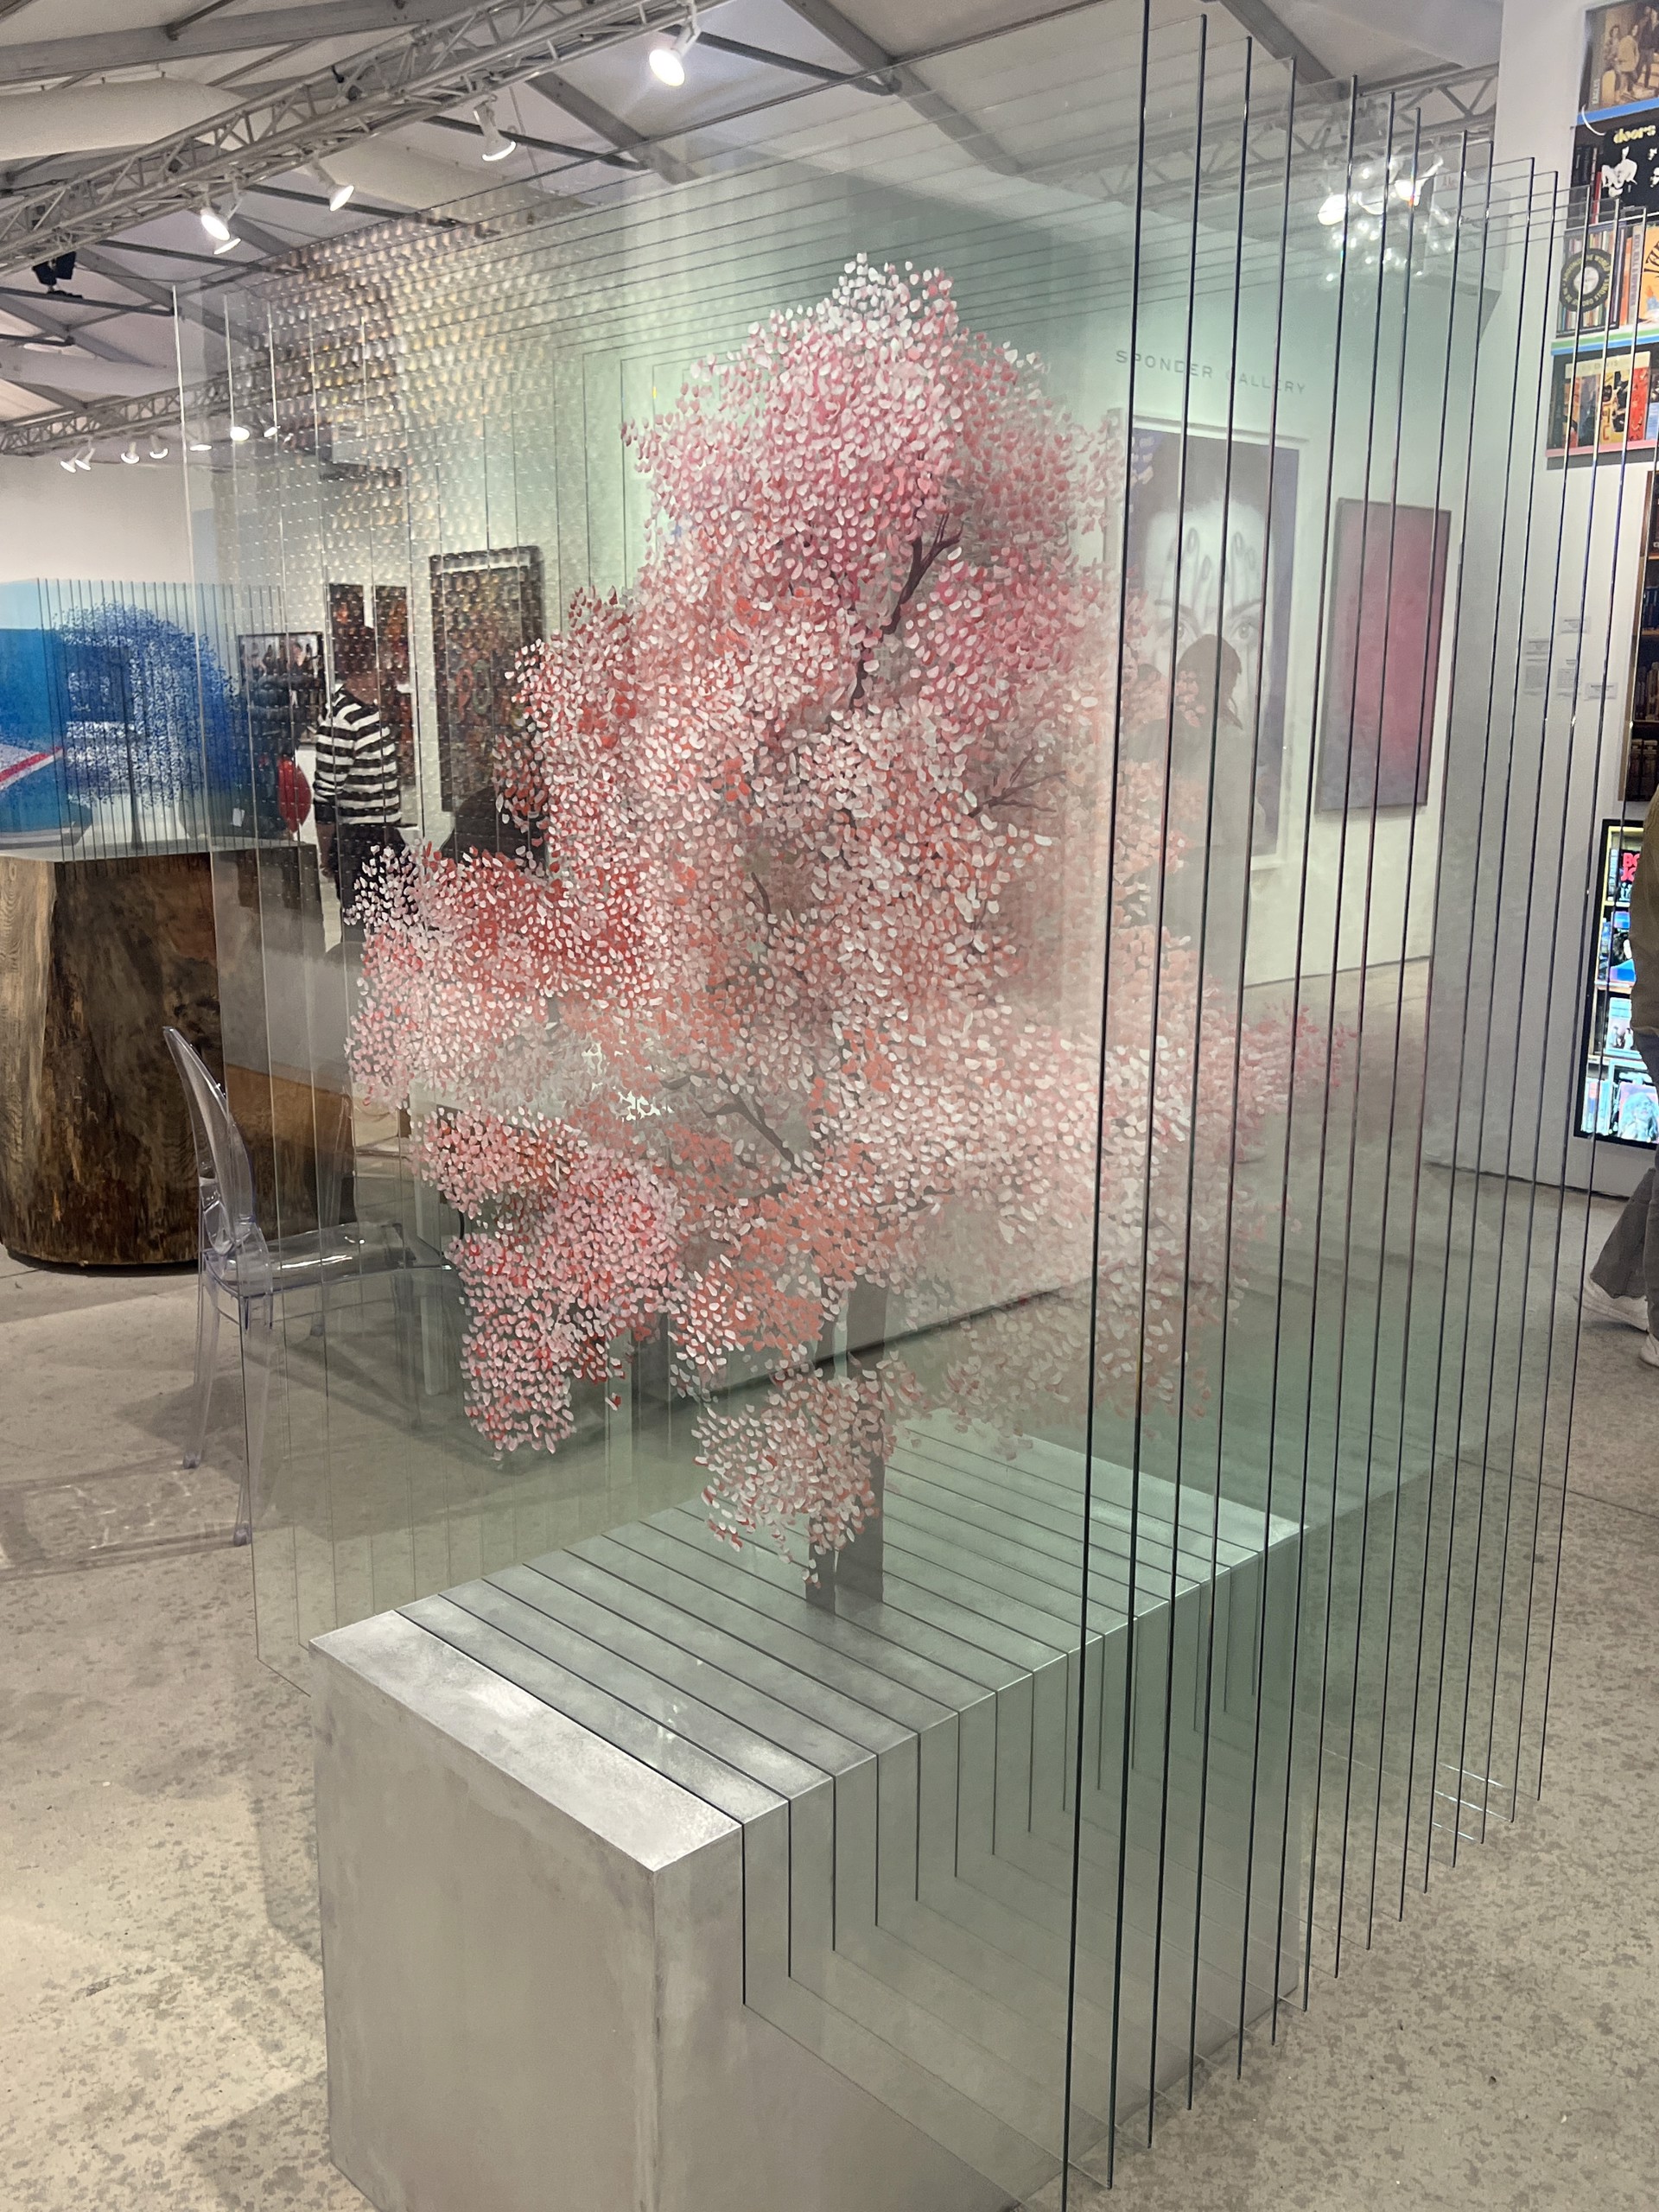 Blossom Tree by Ardan Özmenoğlu